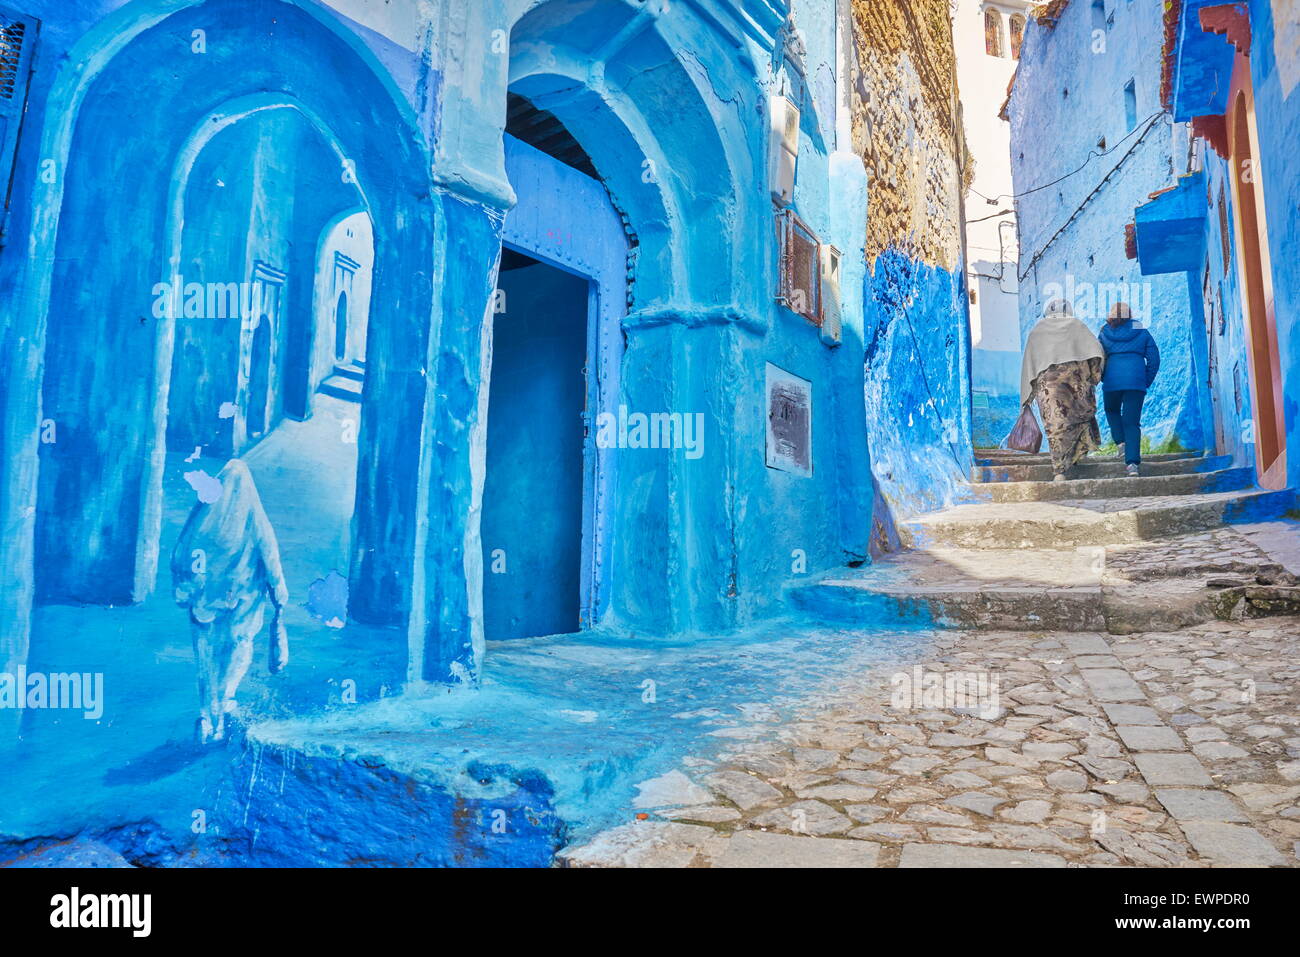 La vieille ville de Chefchaouen (Chaouen) connu sous le nom de la ville bleue, le Maroc, l'Afrique Banque D'Images